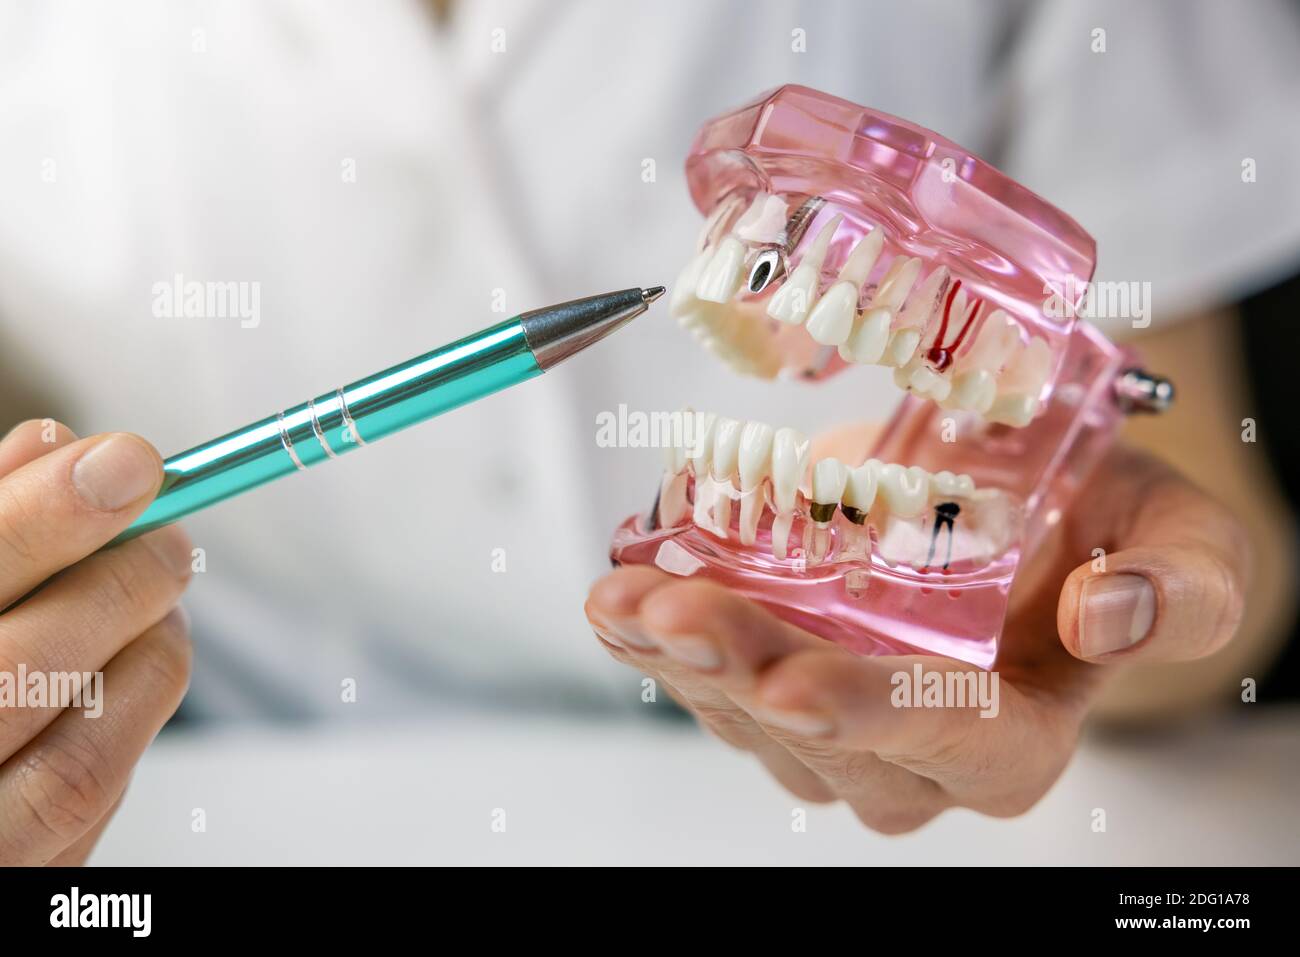 implantologo dentista che mostra la tecnologia dell'impianto dentale sulla mascella del dente umano modello Foto Stock